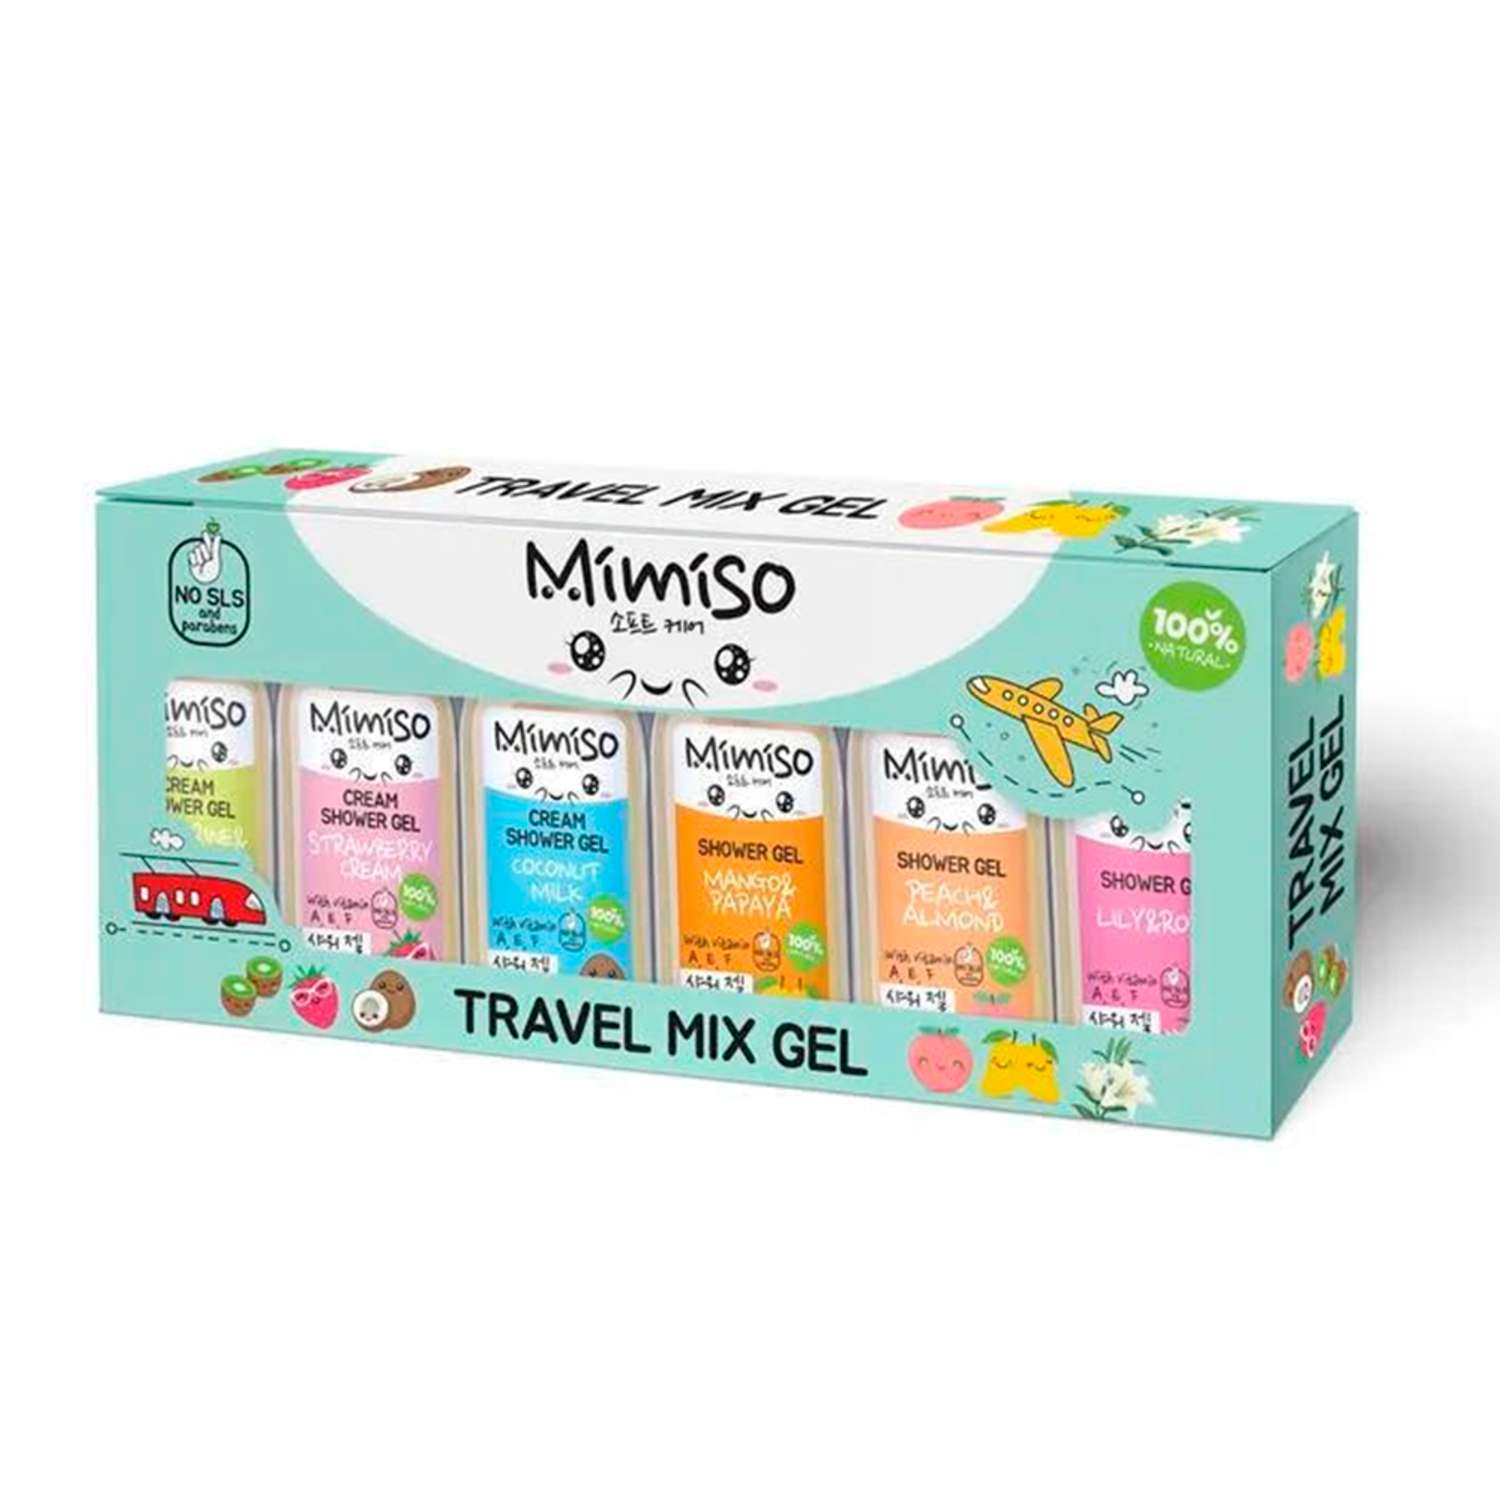 Подарочный набор Mimiso Travel mix gel 3 крем-геля для душа 50 мл + 3 Геля для душа 50 мл - фото 1